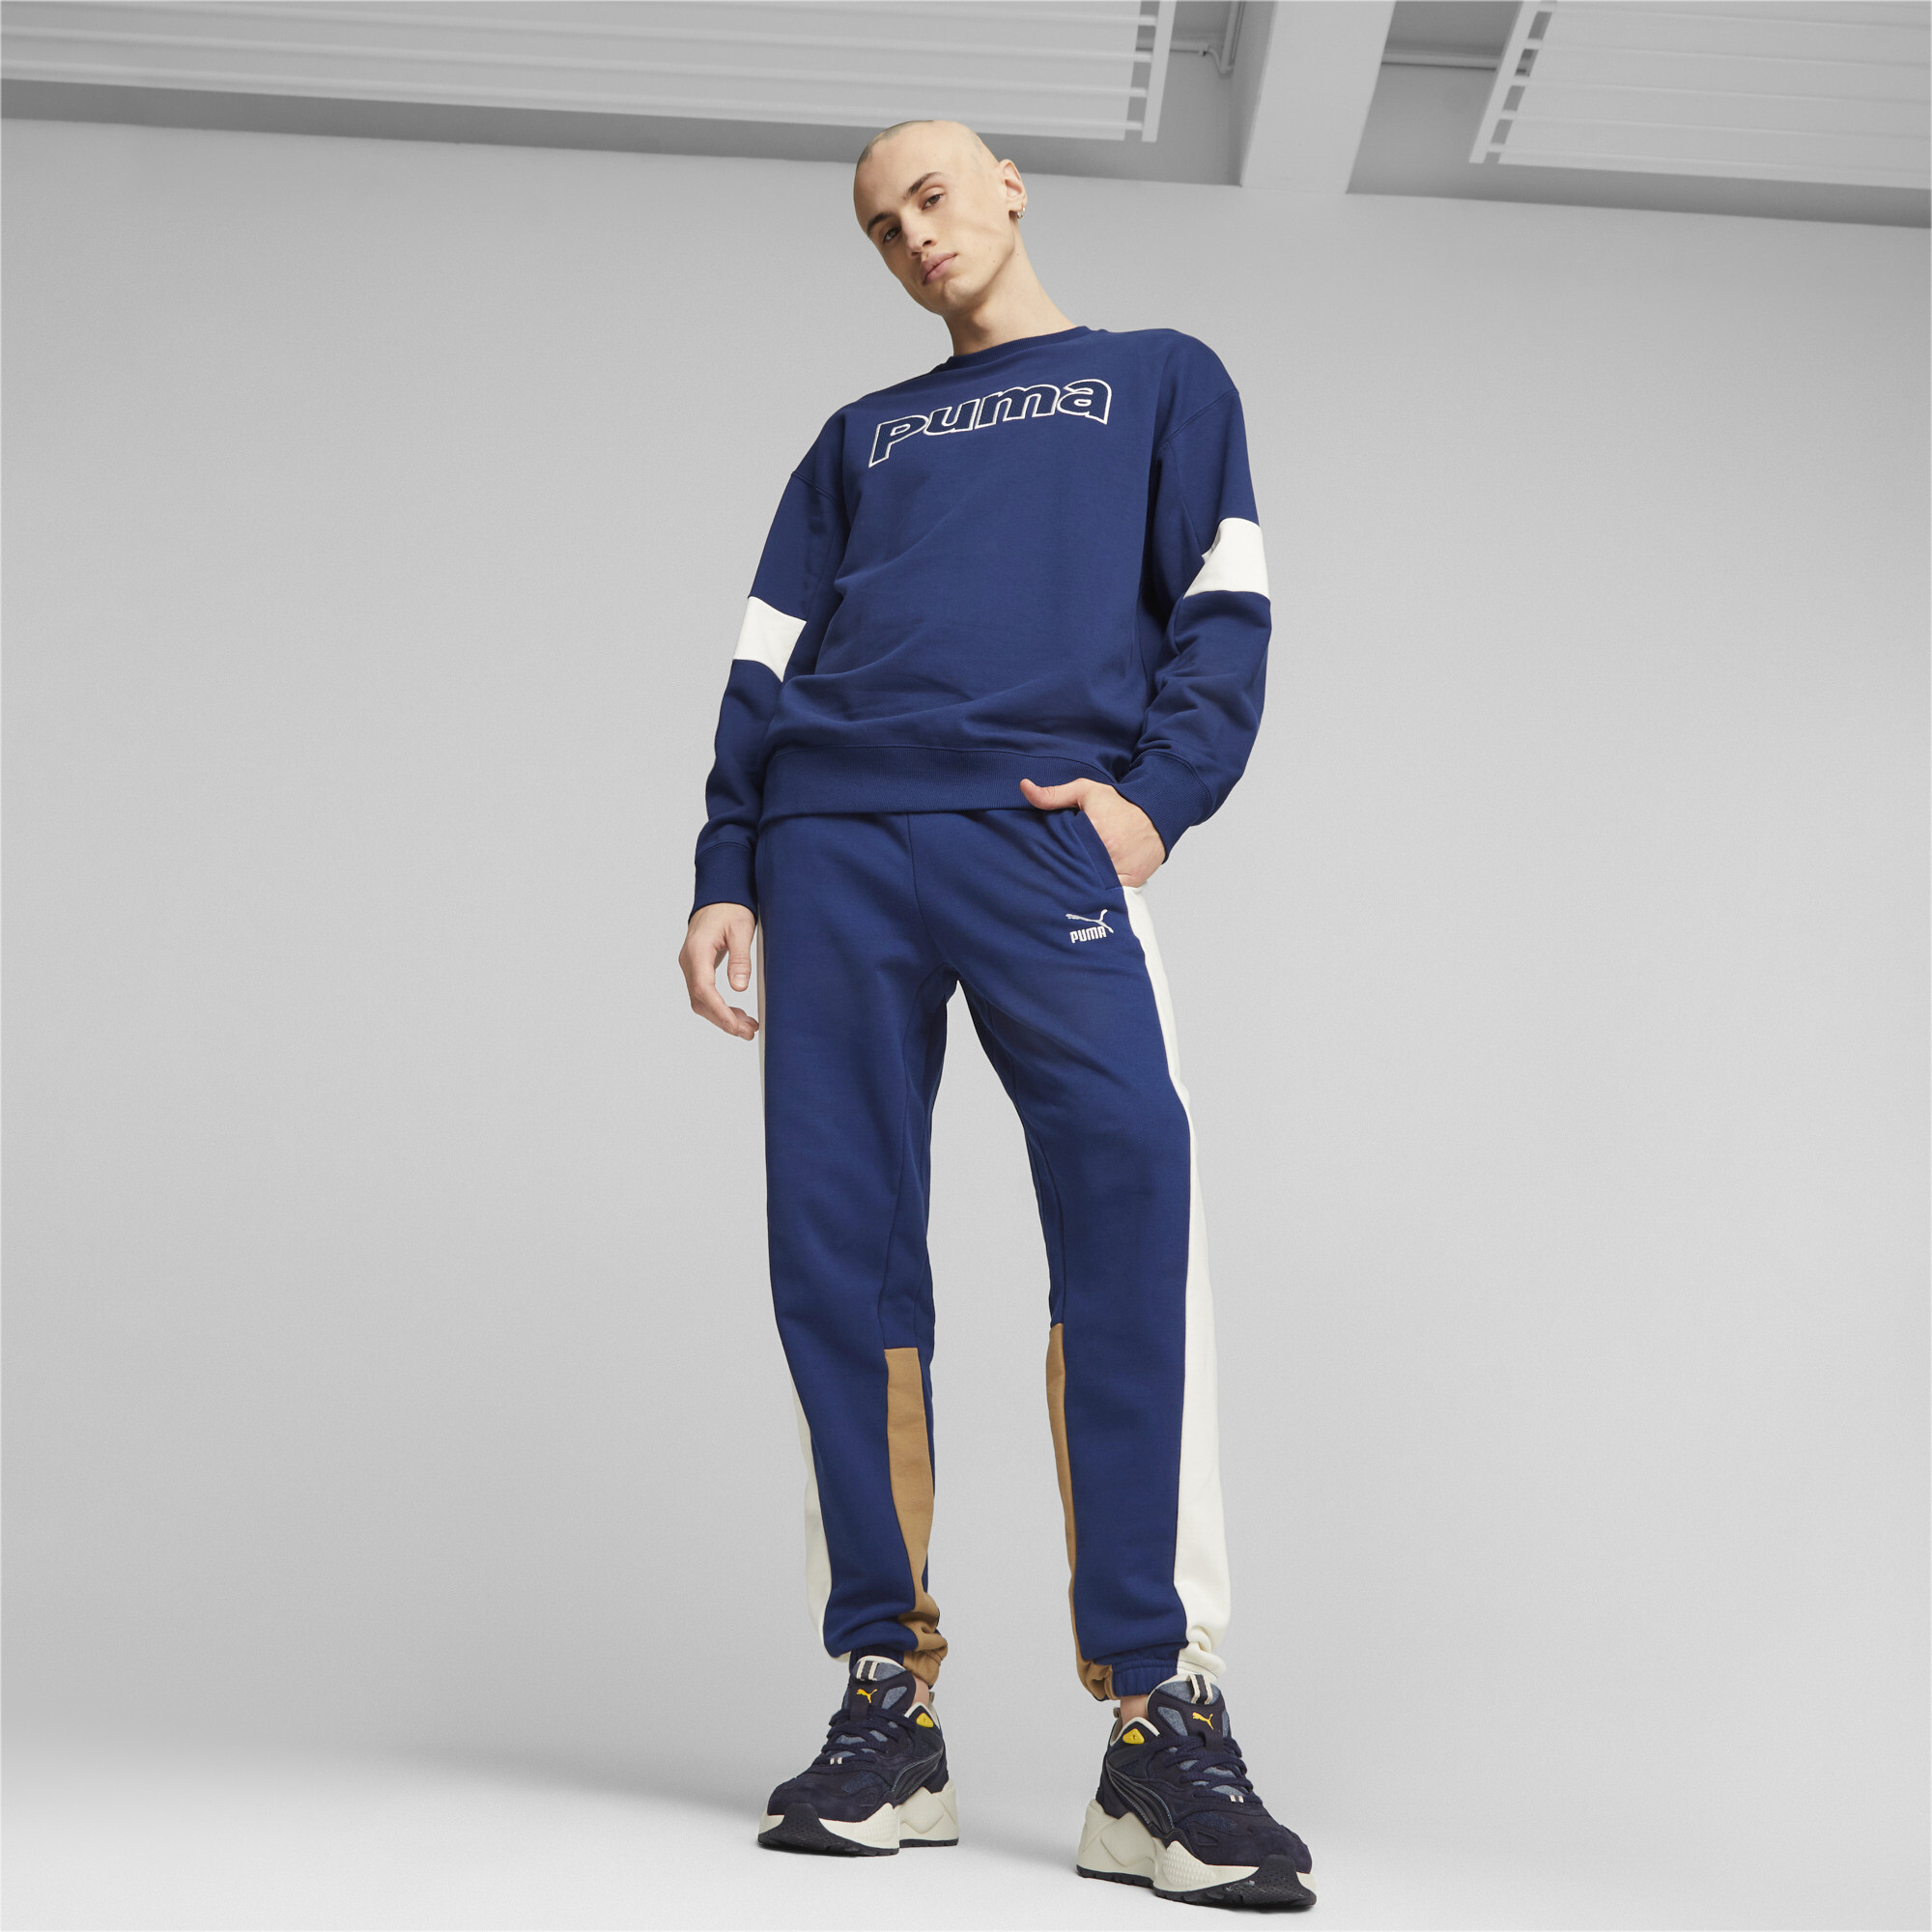 Men's Puma Classics Block's Sweatpants, Blue, Size L, Clothing